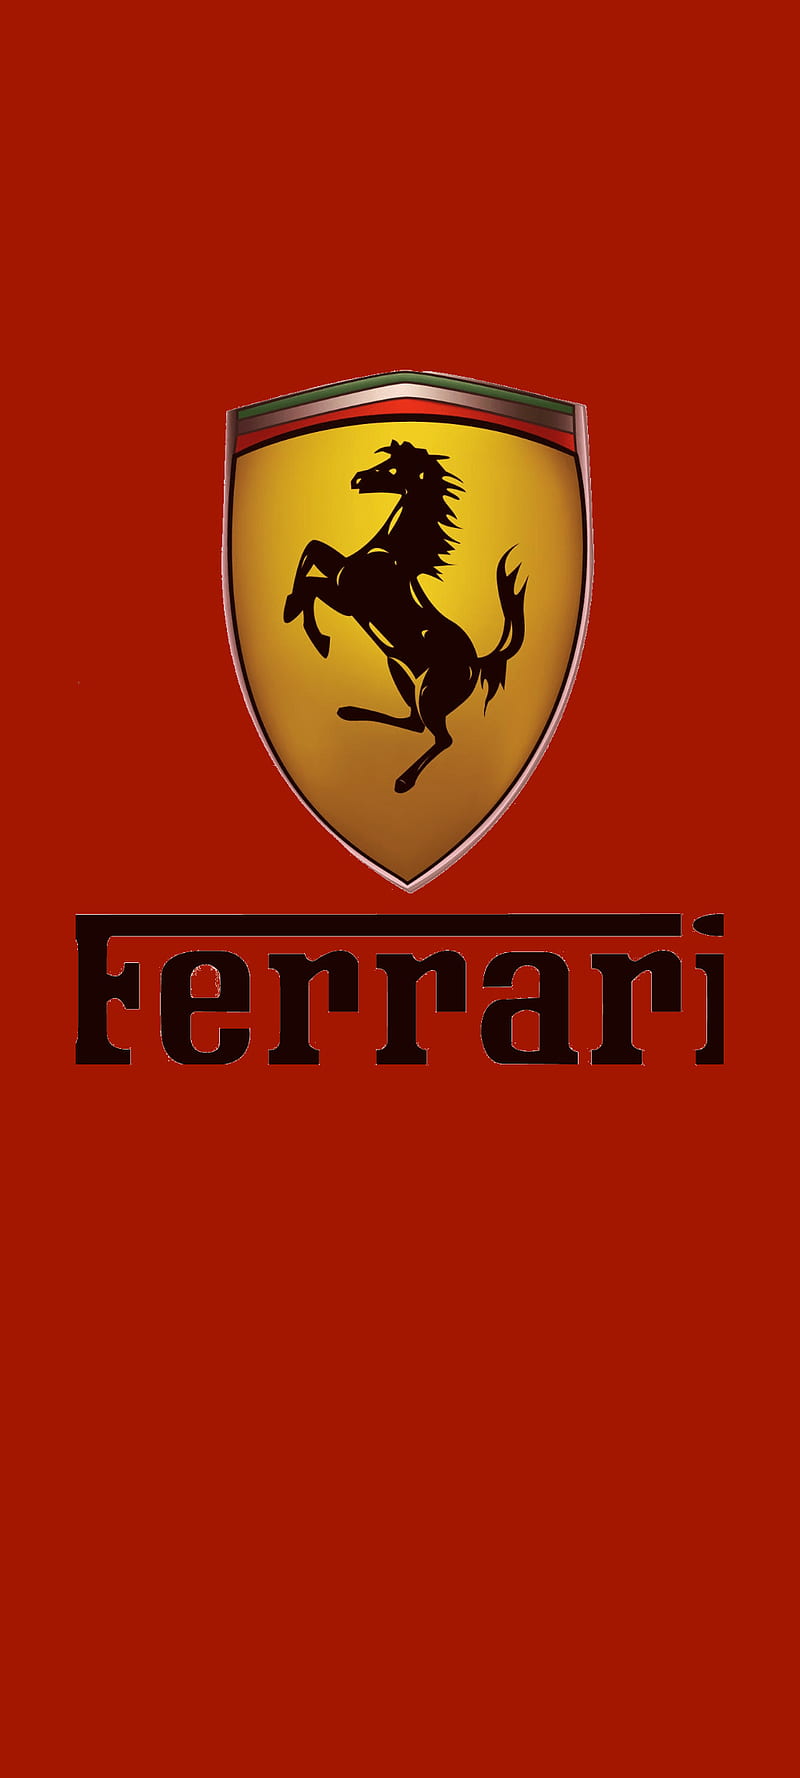 Ferrari Logo Wallpapers For Mobile - Wallpaper Cave